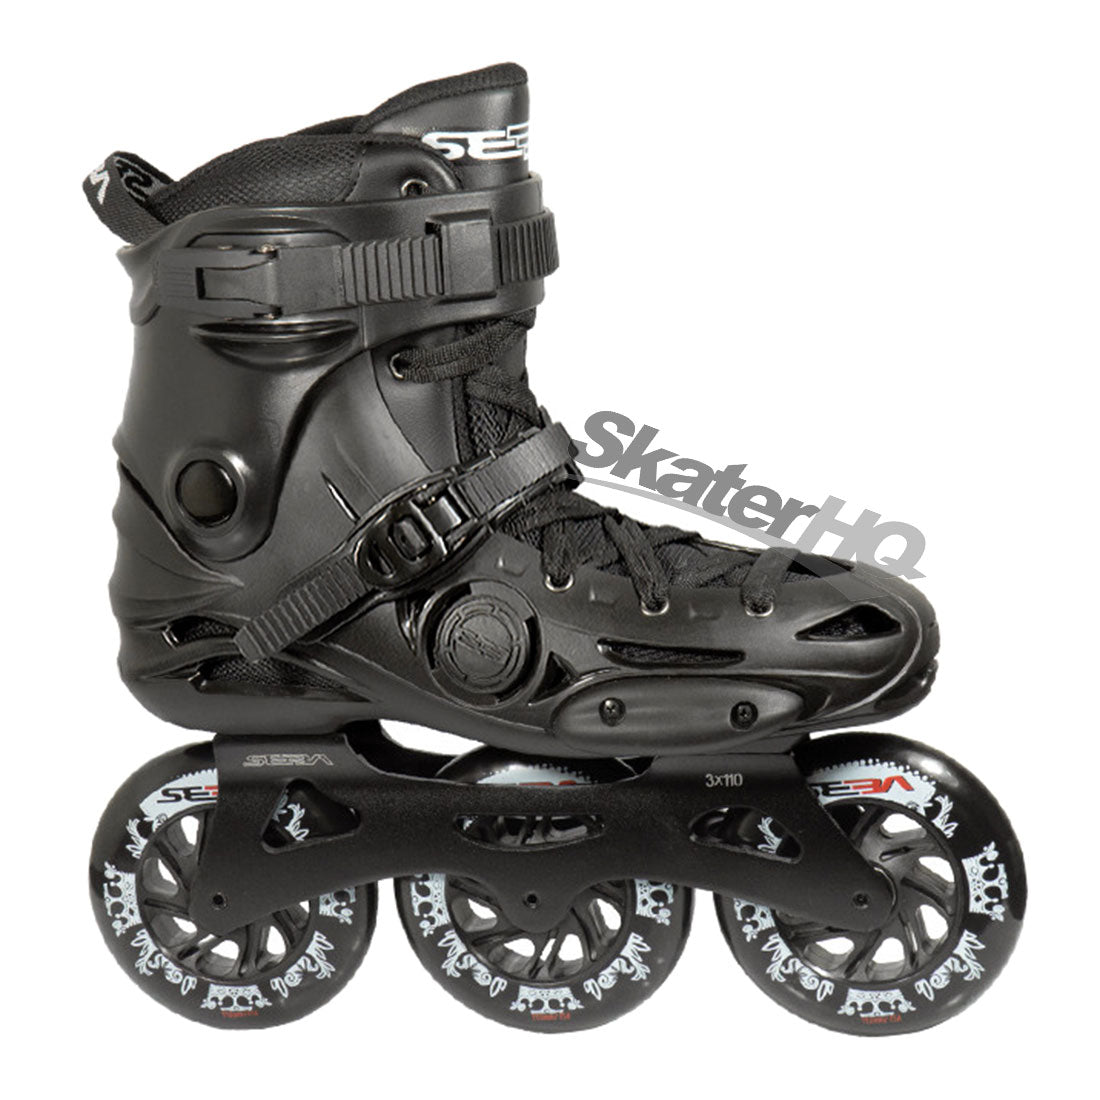 Seba E3 310 Premium Black - 11US EU45 Inline Rec Skates